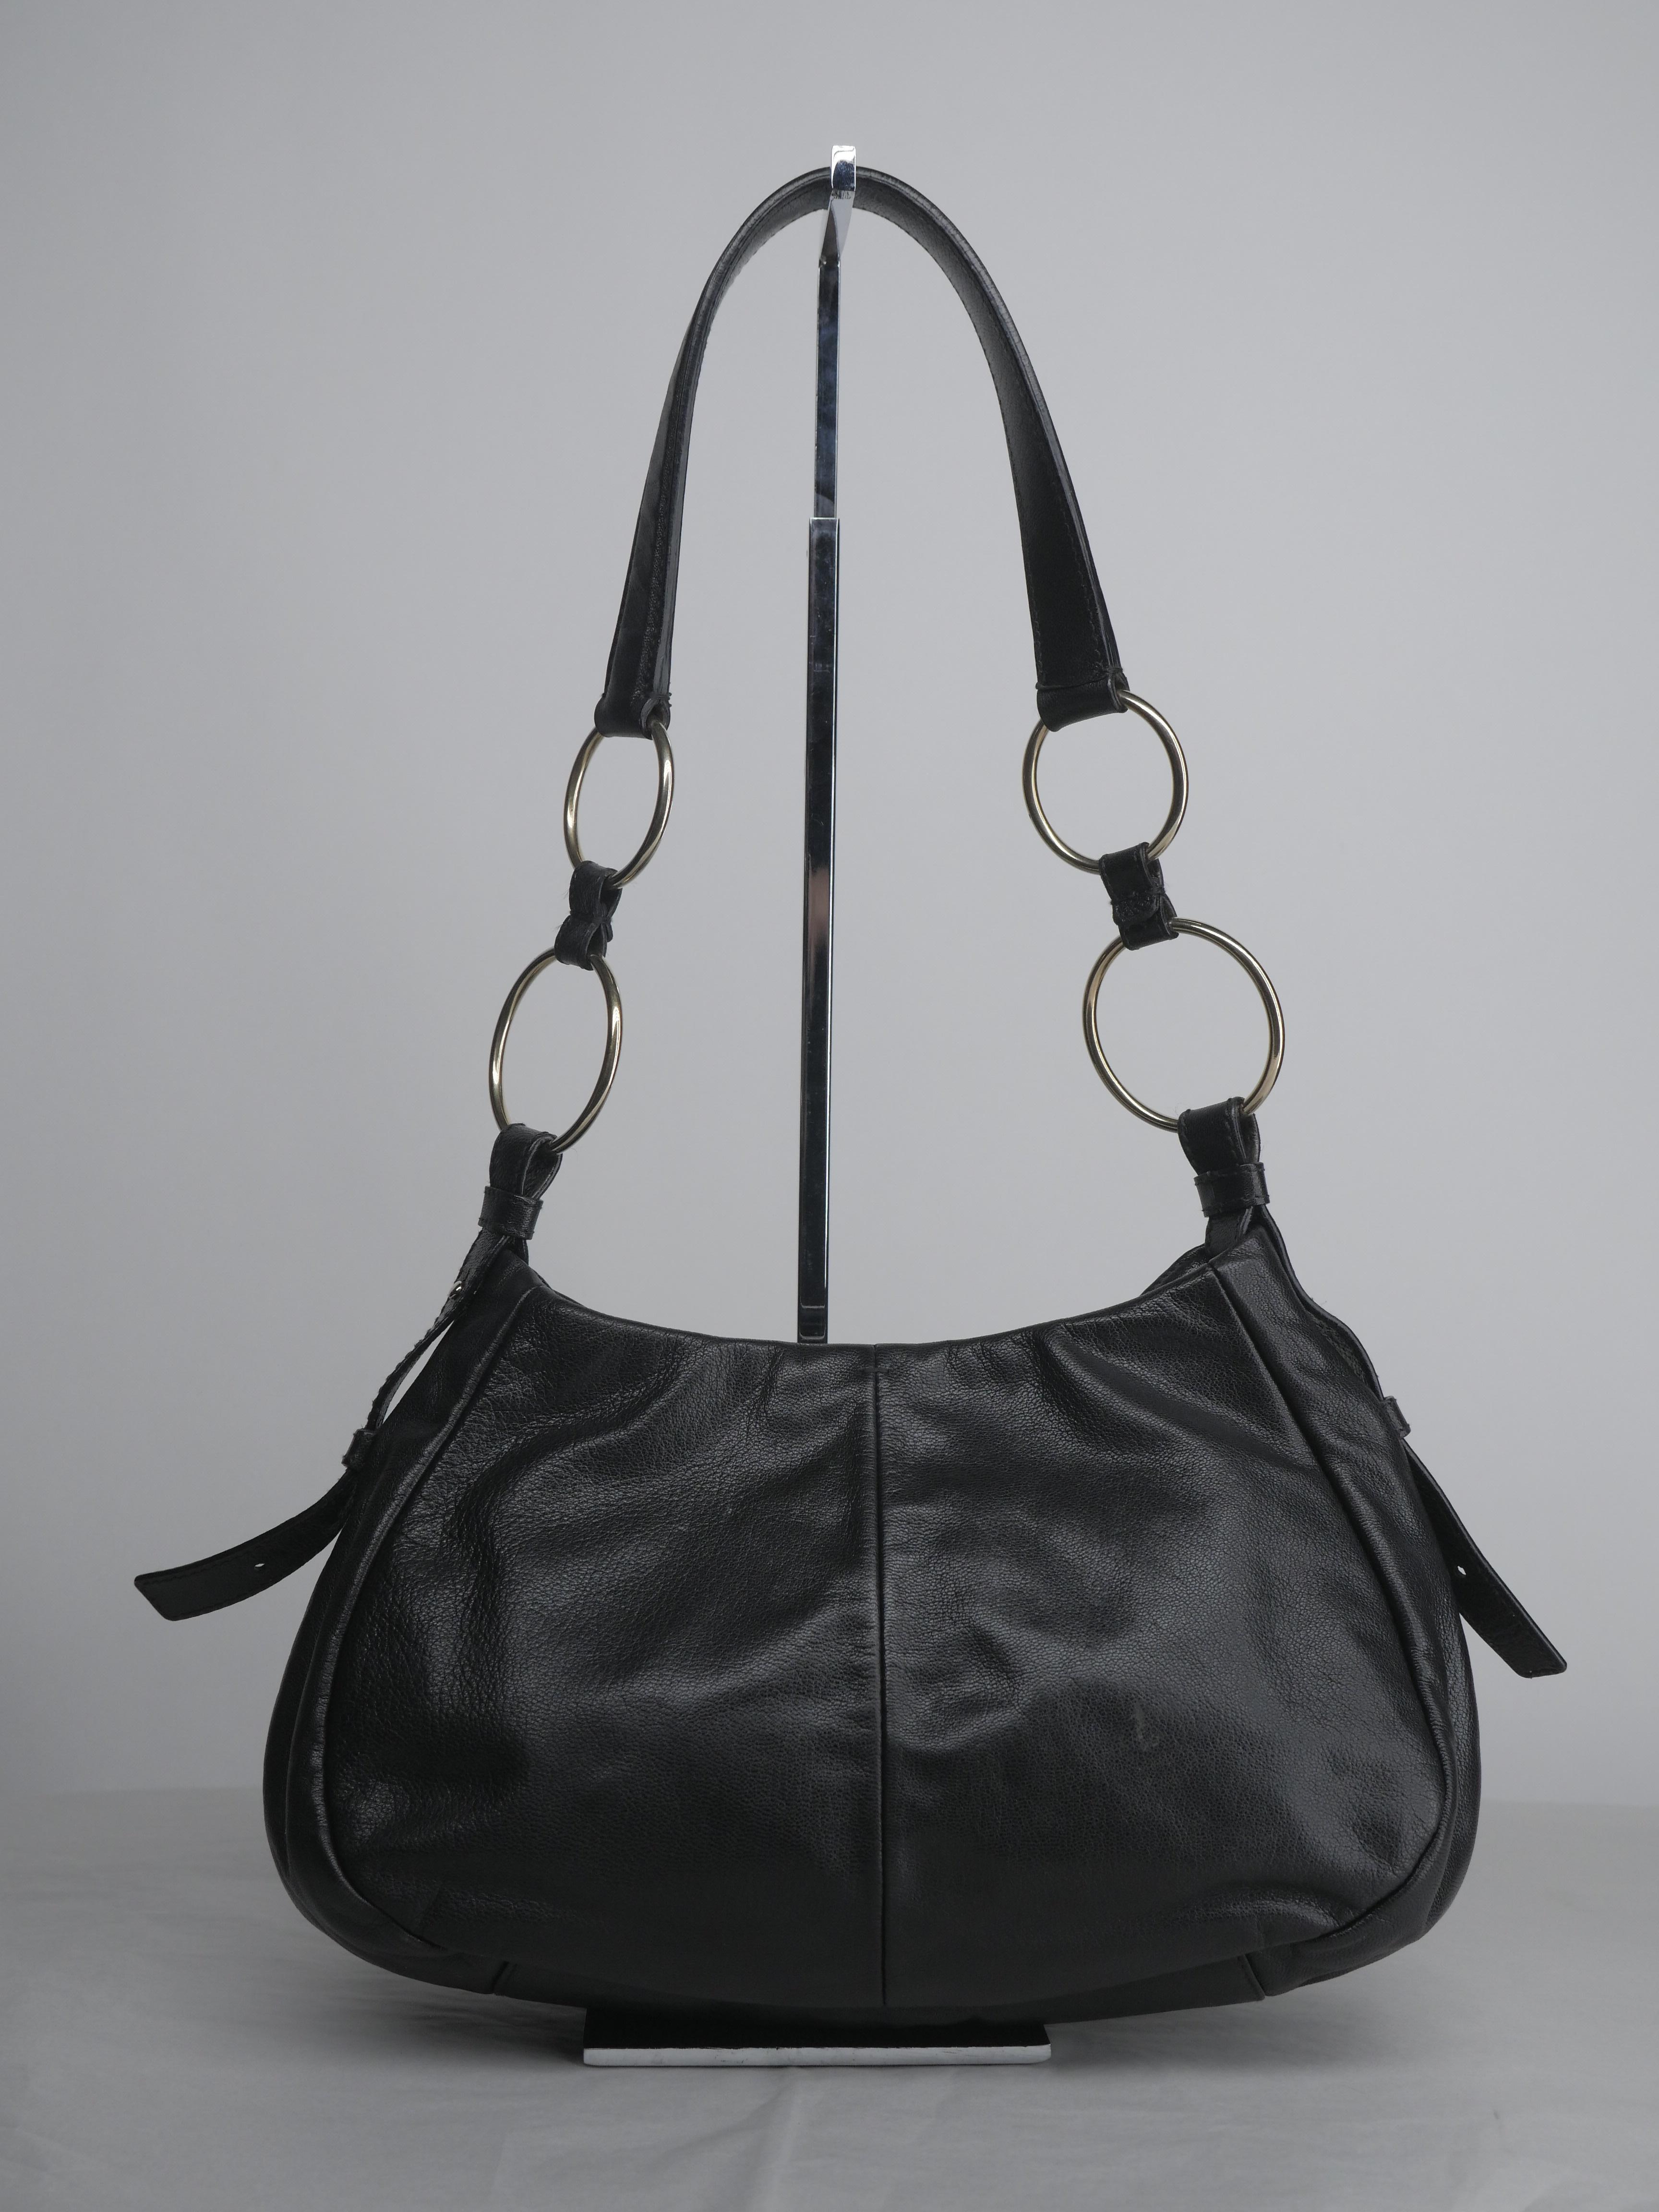 Yves Saint Laurent Black and Gold Hardware Shoulder Bag 5